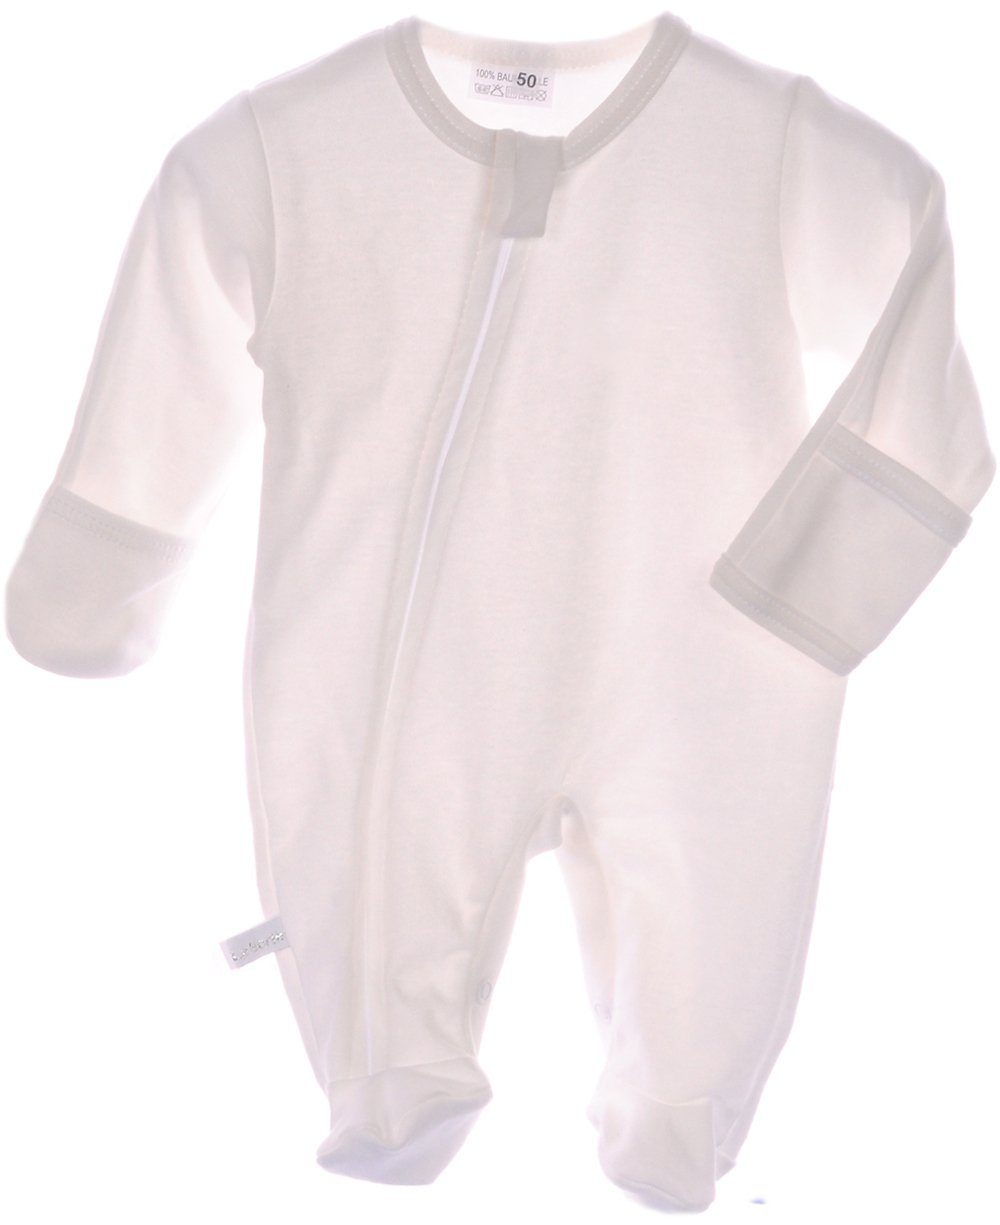 Baby Strampler Overall Schlafanzug cremeweiß mit Stickerei NEU mit Etikett 